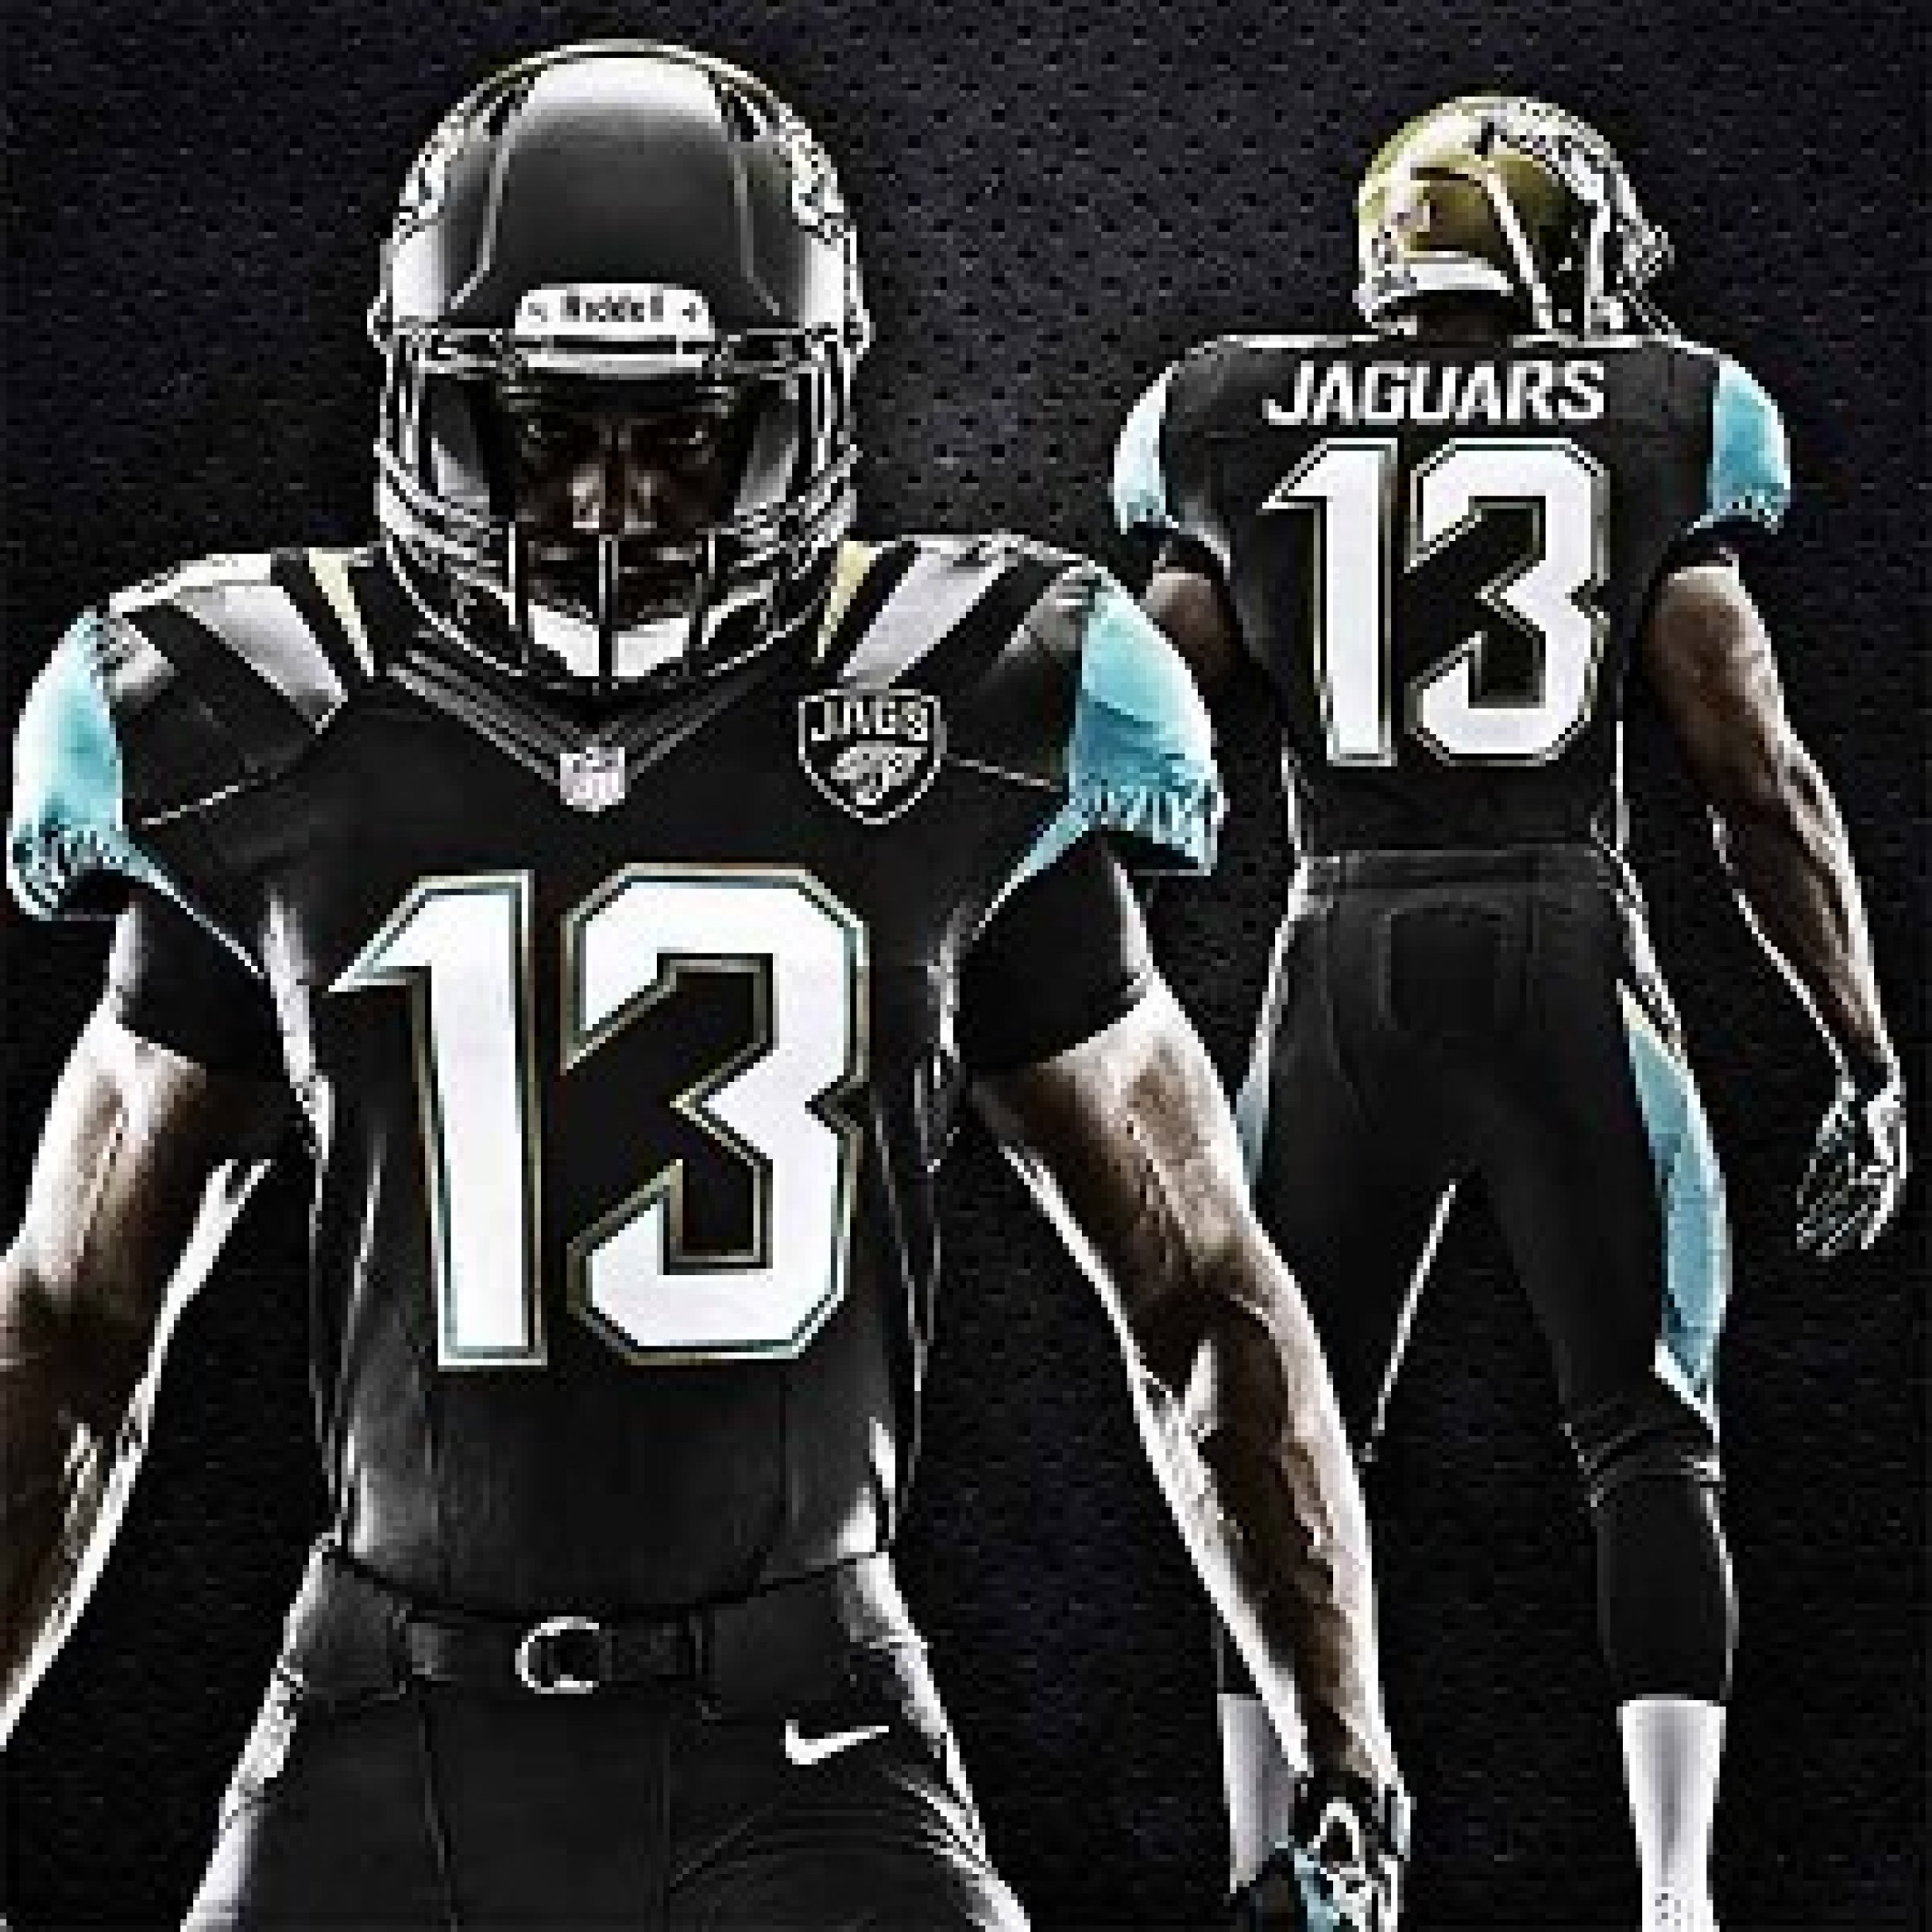 Jacksonville Jaguars Uniforms New Jerseys And Logo Revealed For NFL